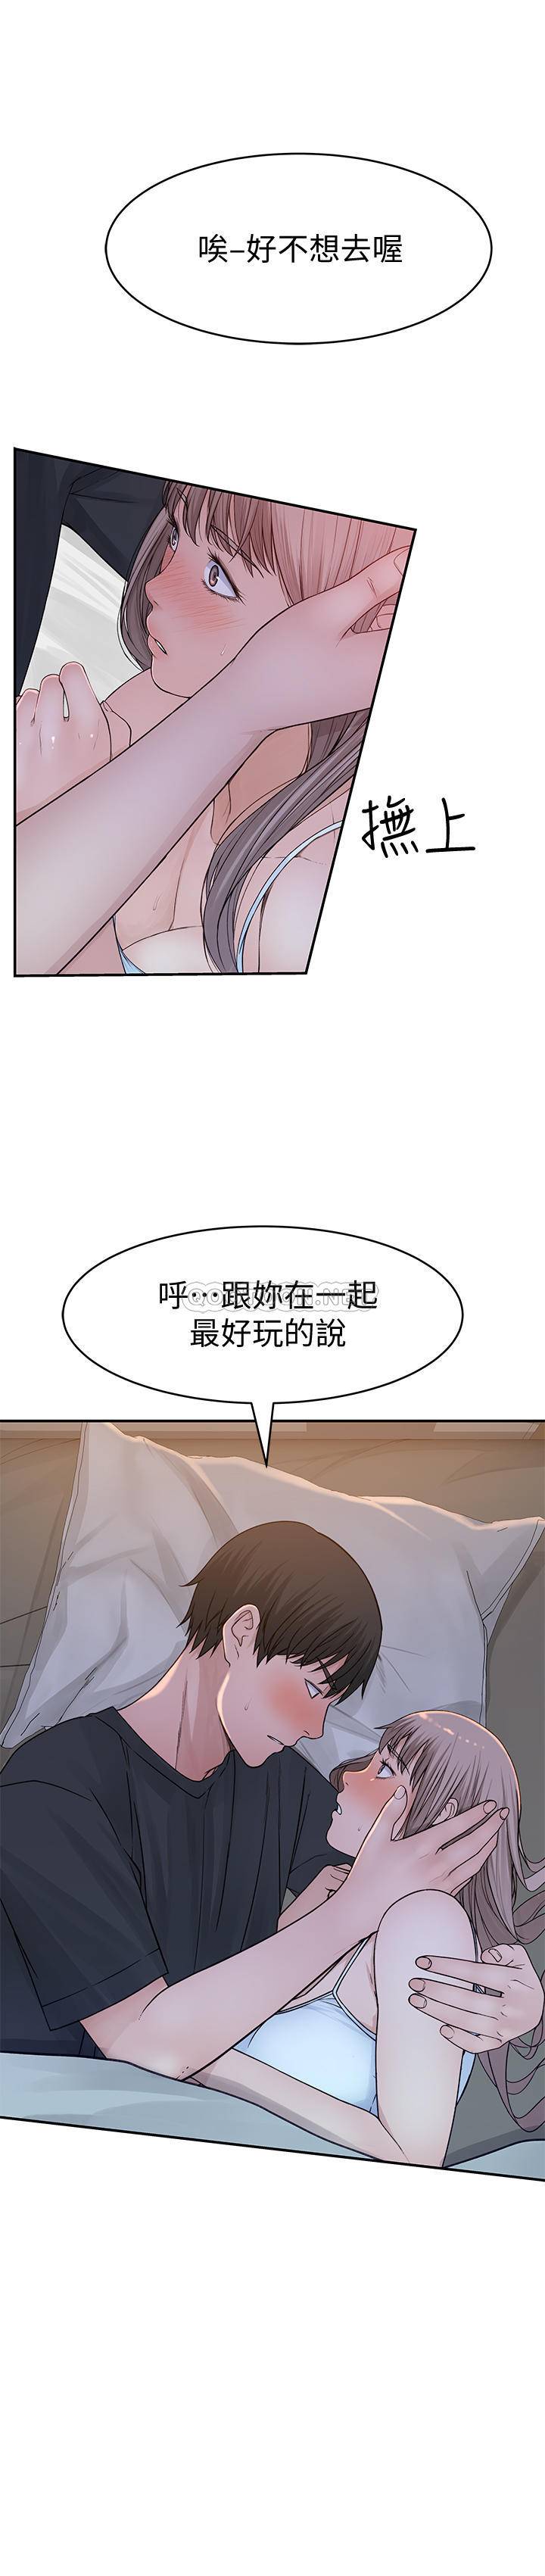 韩国污漫画 我們的非常關系 第50话-回归单身的江晓筑 8